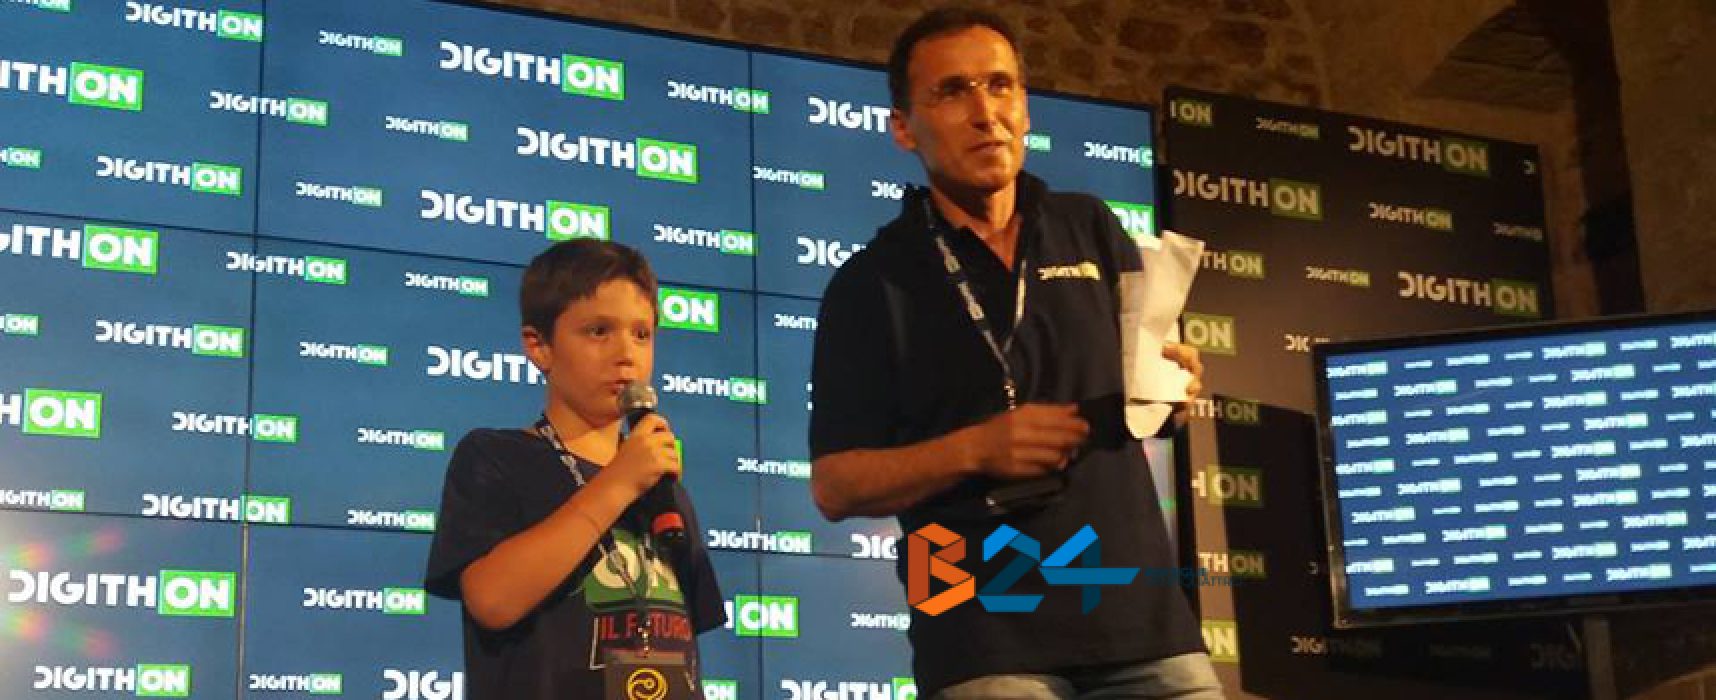 DigithON 2017, la stampa estera parla della startup del piccolo biscegliese Valerio Di Luzio